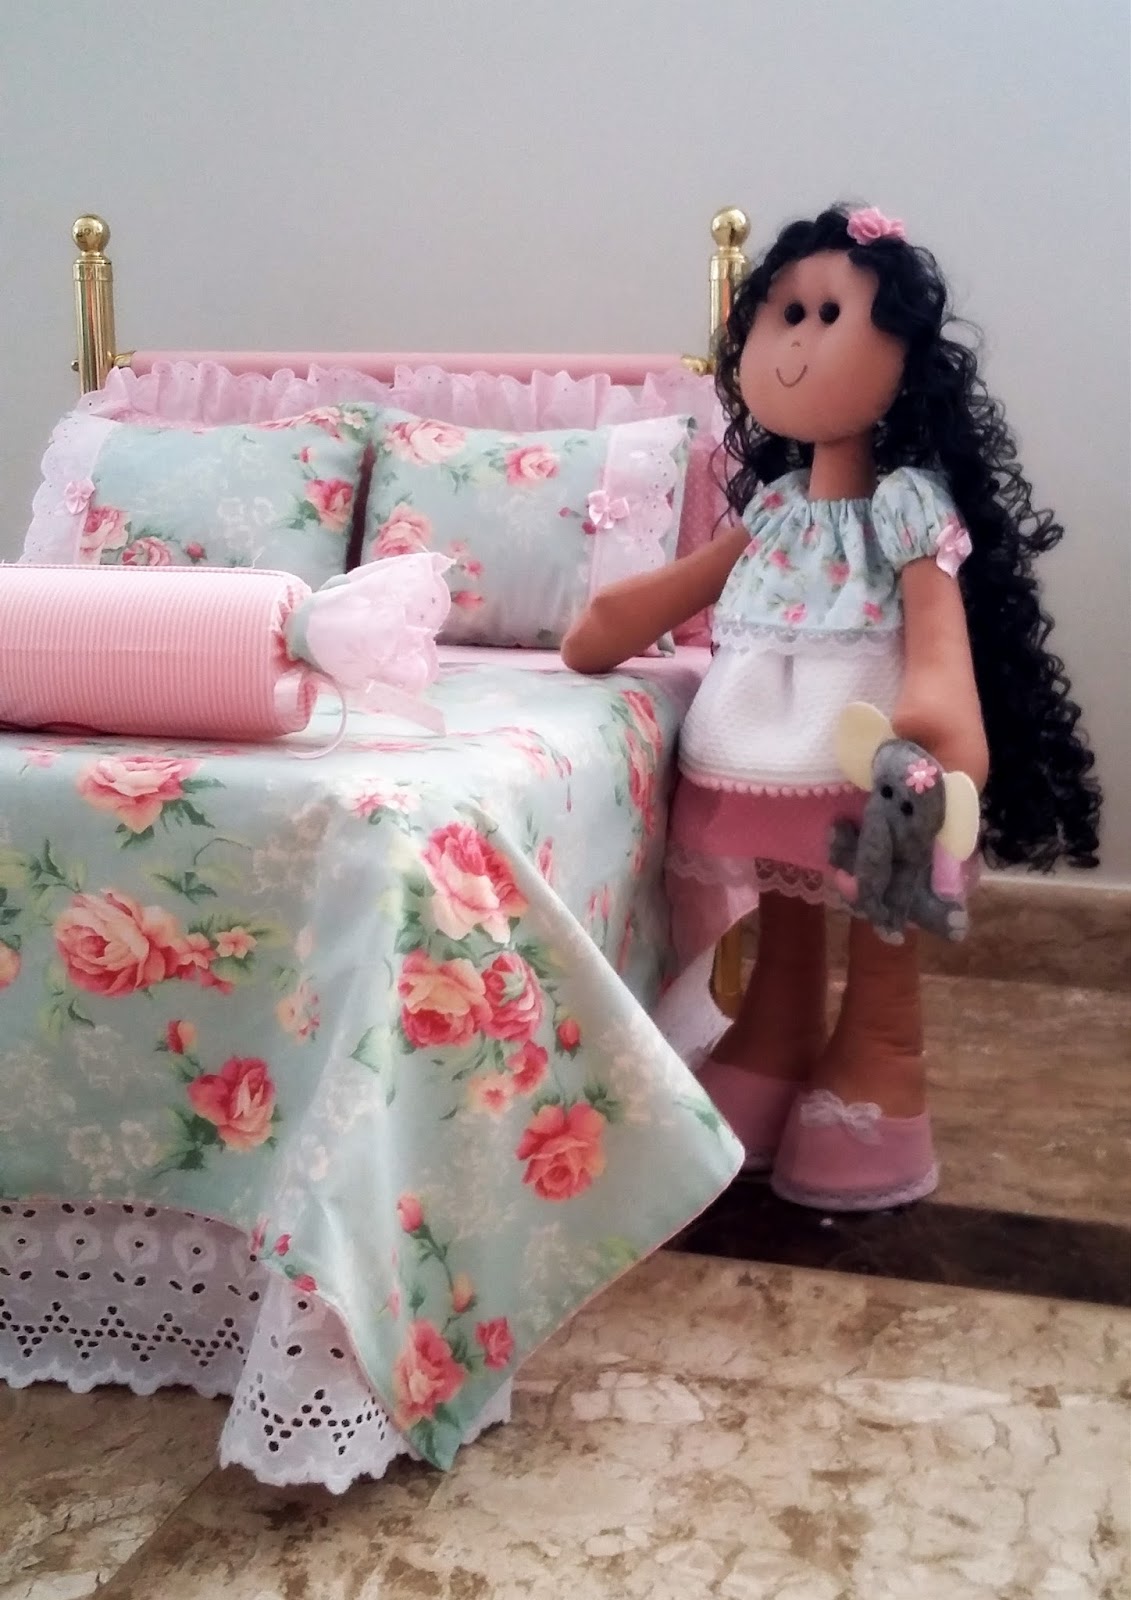 Maria Girafa Ateliê: Decoração - Jogo de cama para cama de boneca